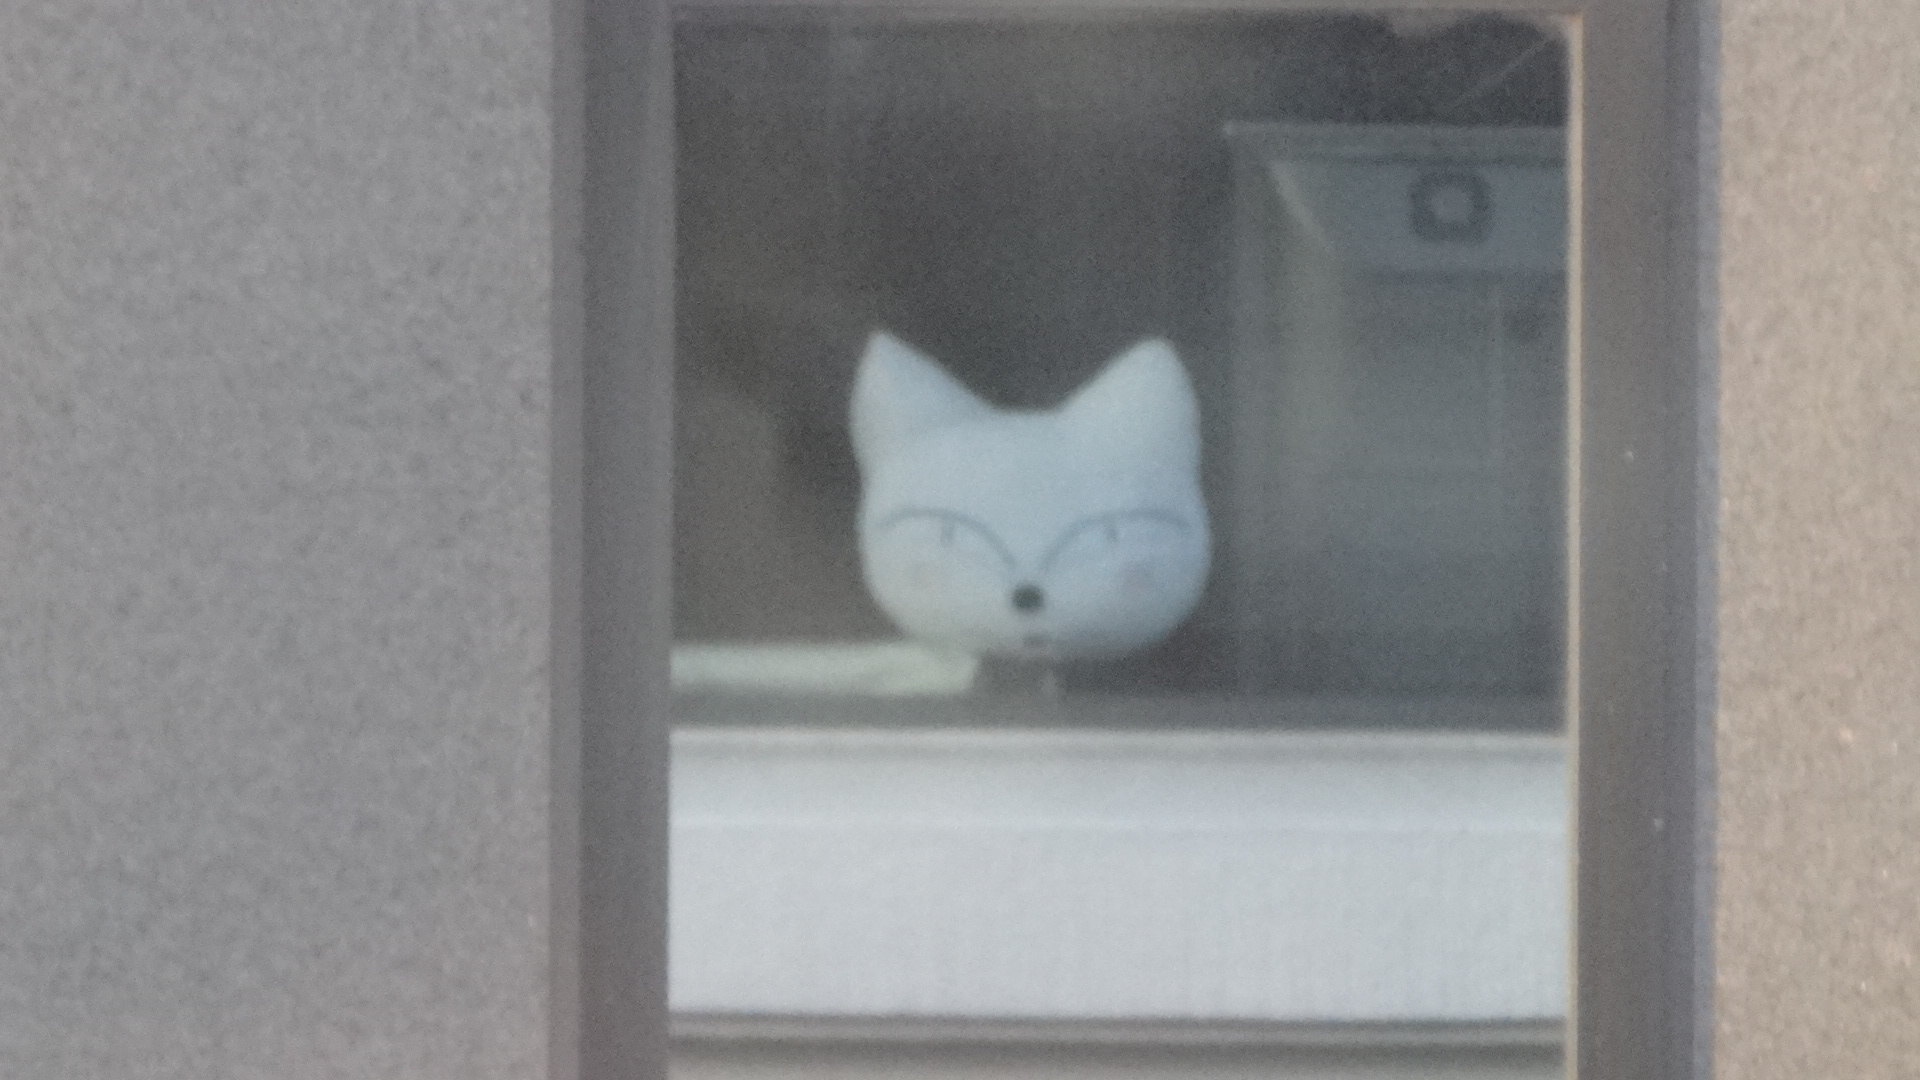 お向いさんのビルの窓に写るネコの形をしたクッション